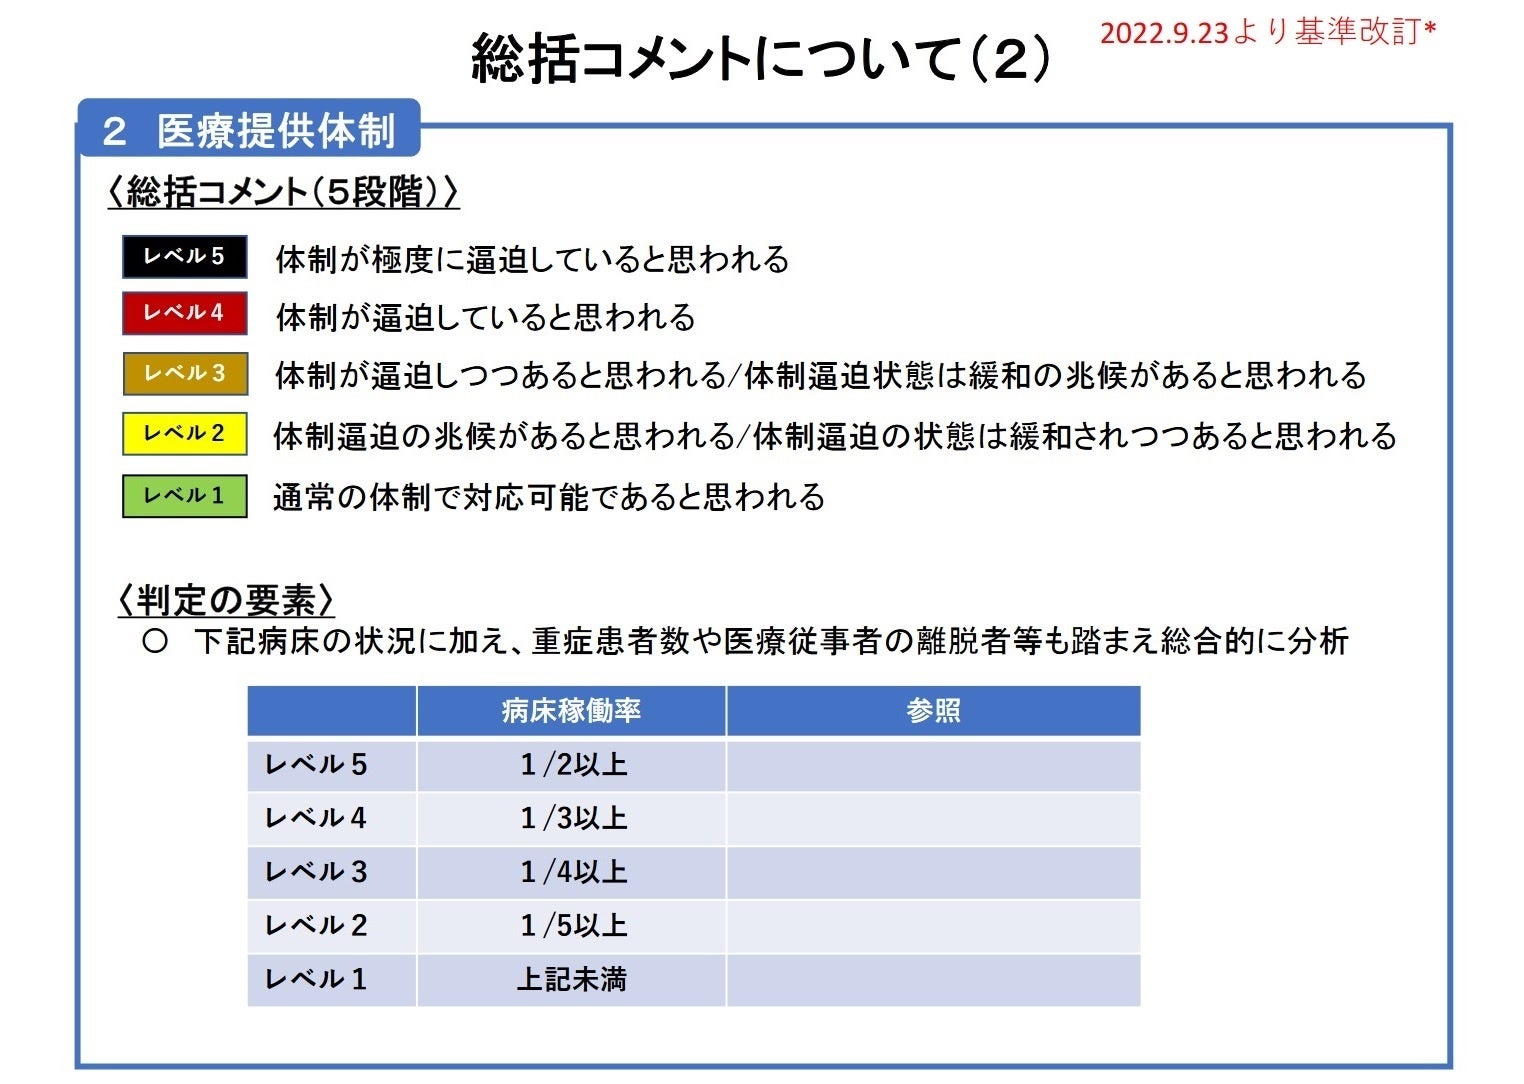 【岡山大学】岡山県内の感染状況・医療提供体制の分析について（2023年7月14日現在）